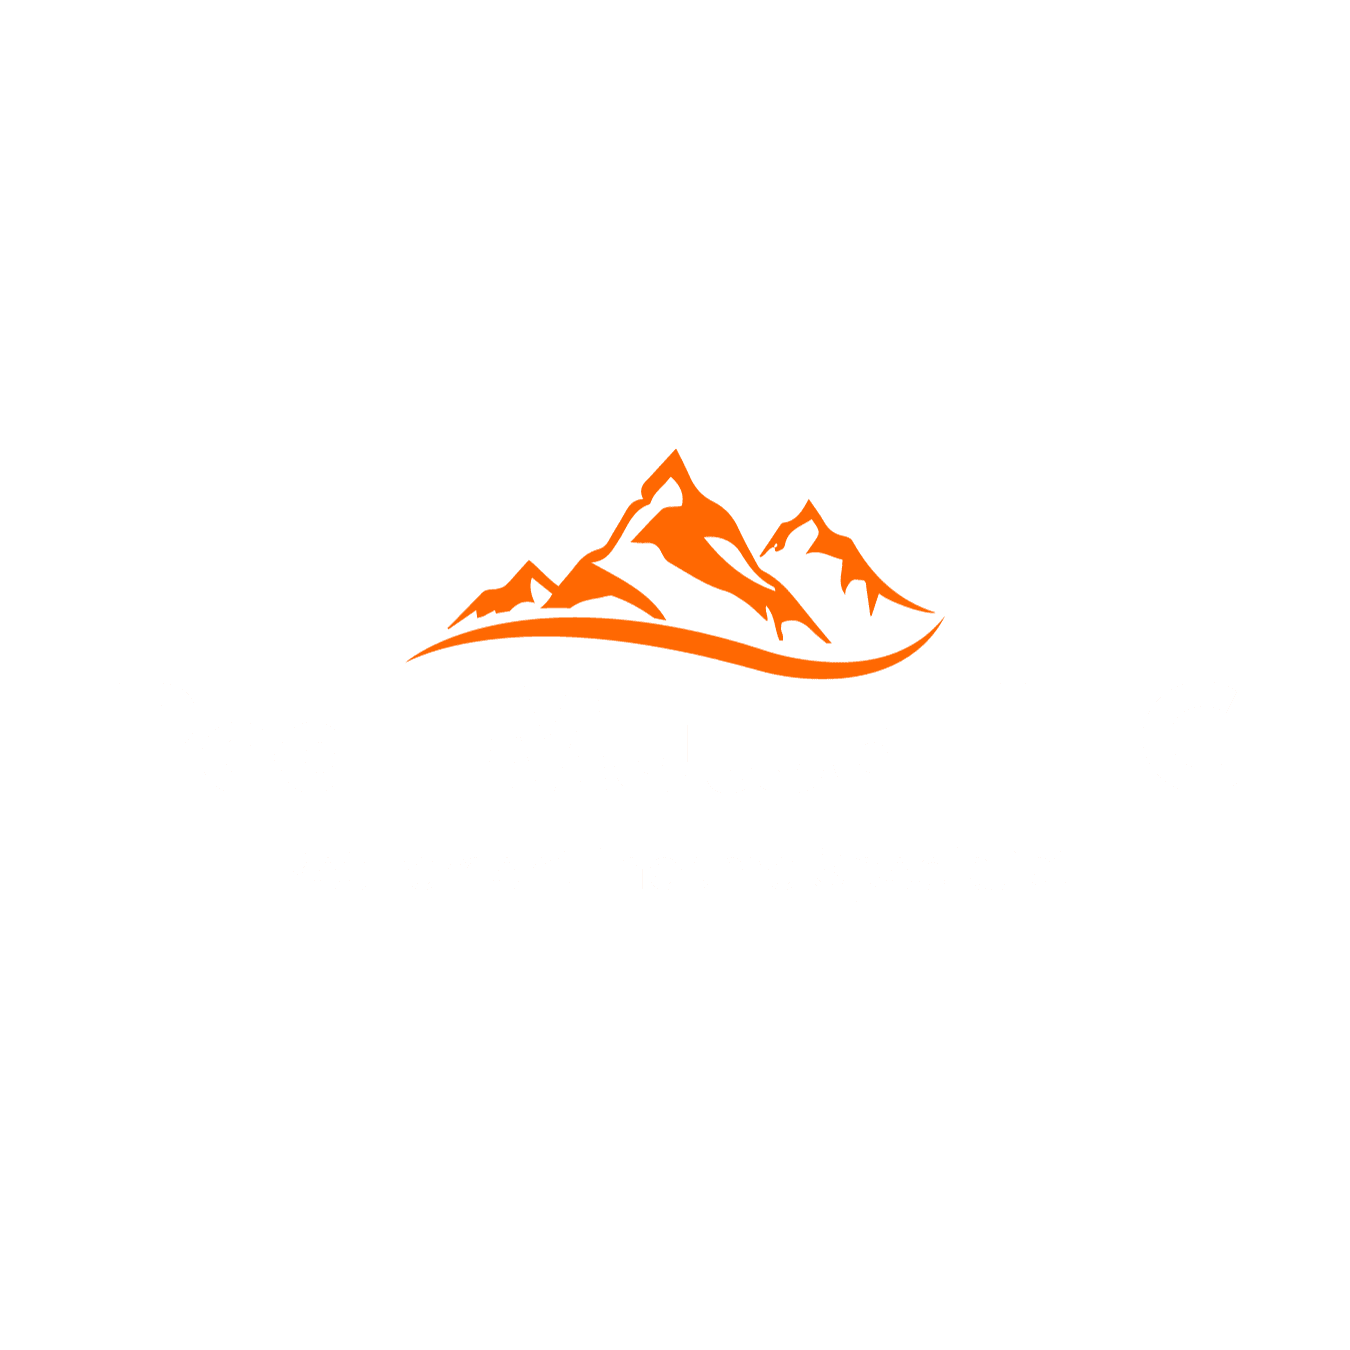 Peak Mutual